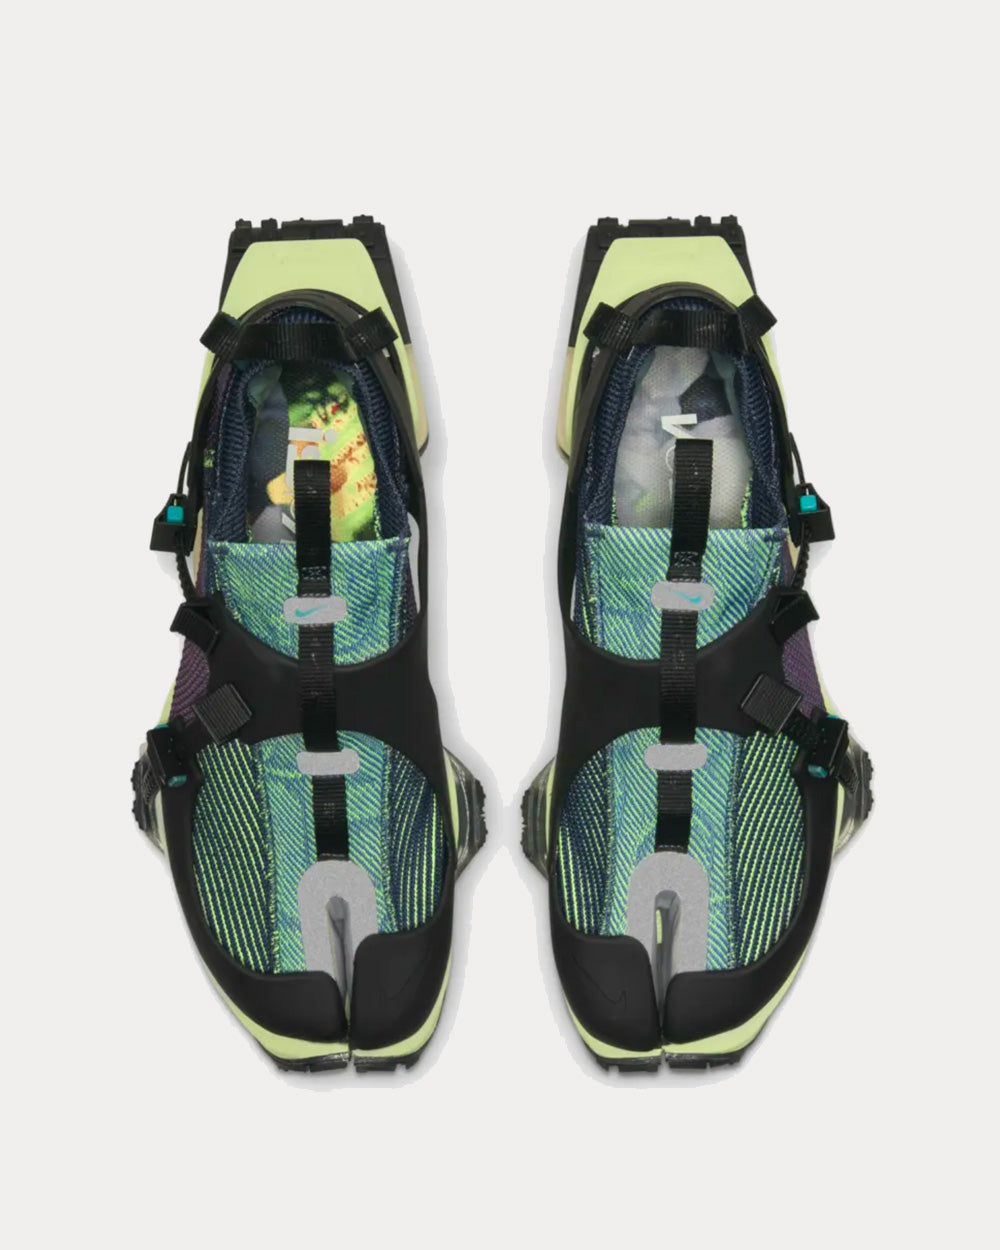 Nike ISPA Road Warrior Clear Jade Low Top Sneakers - Sneak in Peace